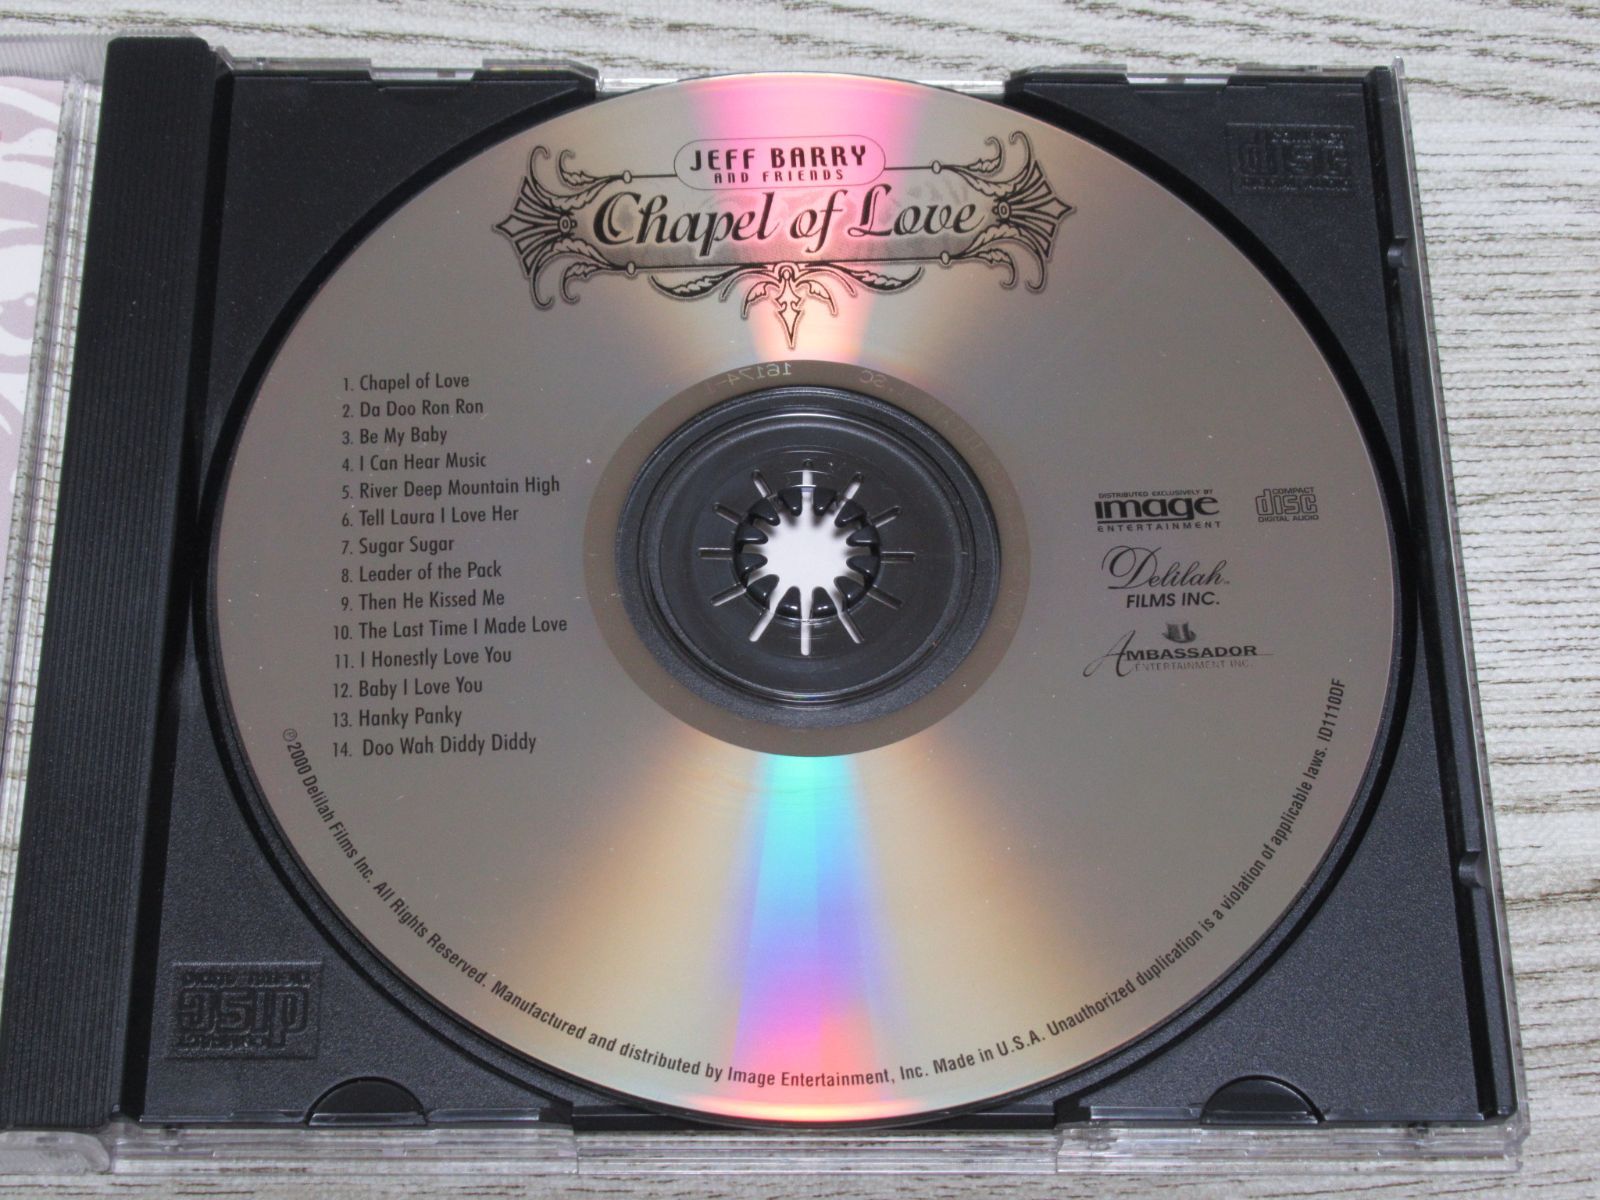 CD JEFF BARRY u0026 FRIENDS CHAPEL OF LOVE 全14曲 ジェフ・バリー ロニー・スペクター ブライアン・ウィルソン  クリスタルズ 他 - メルカリ